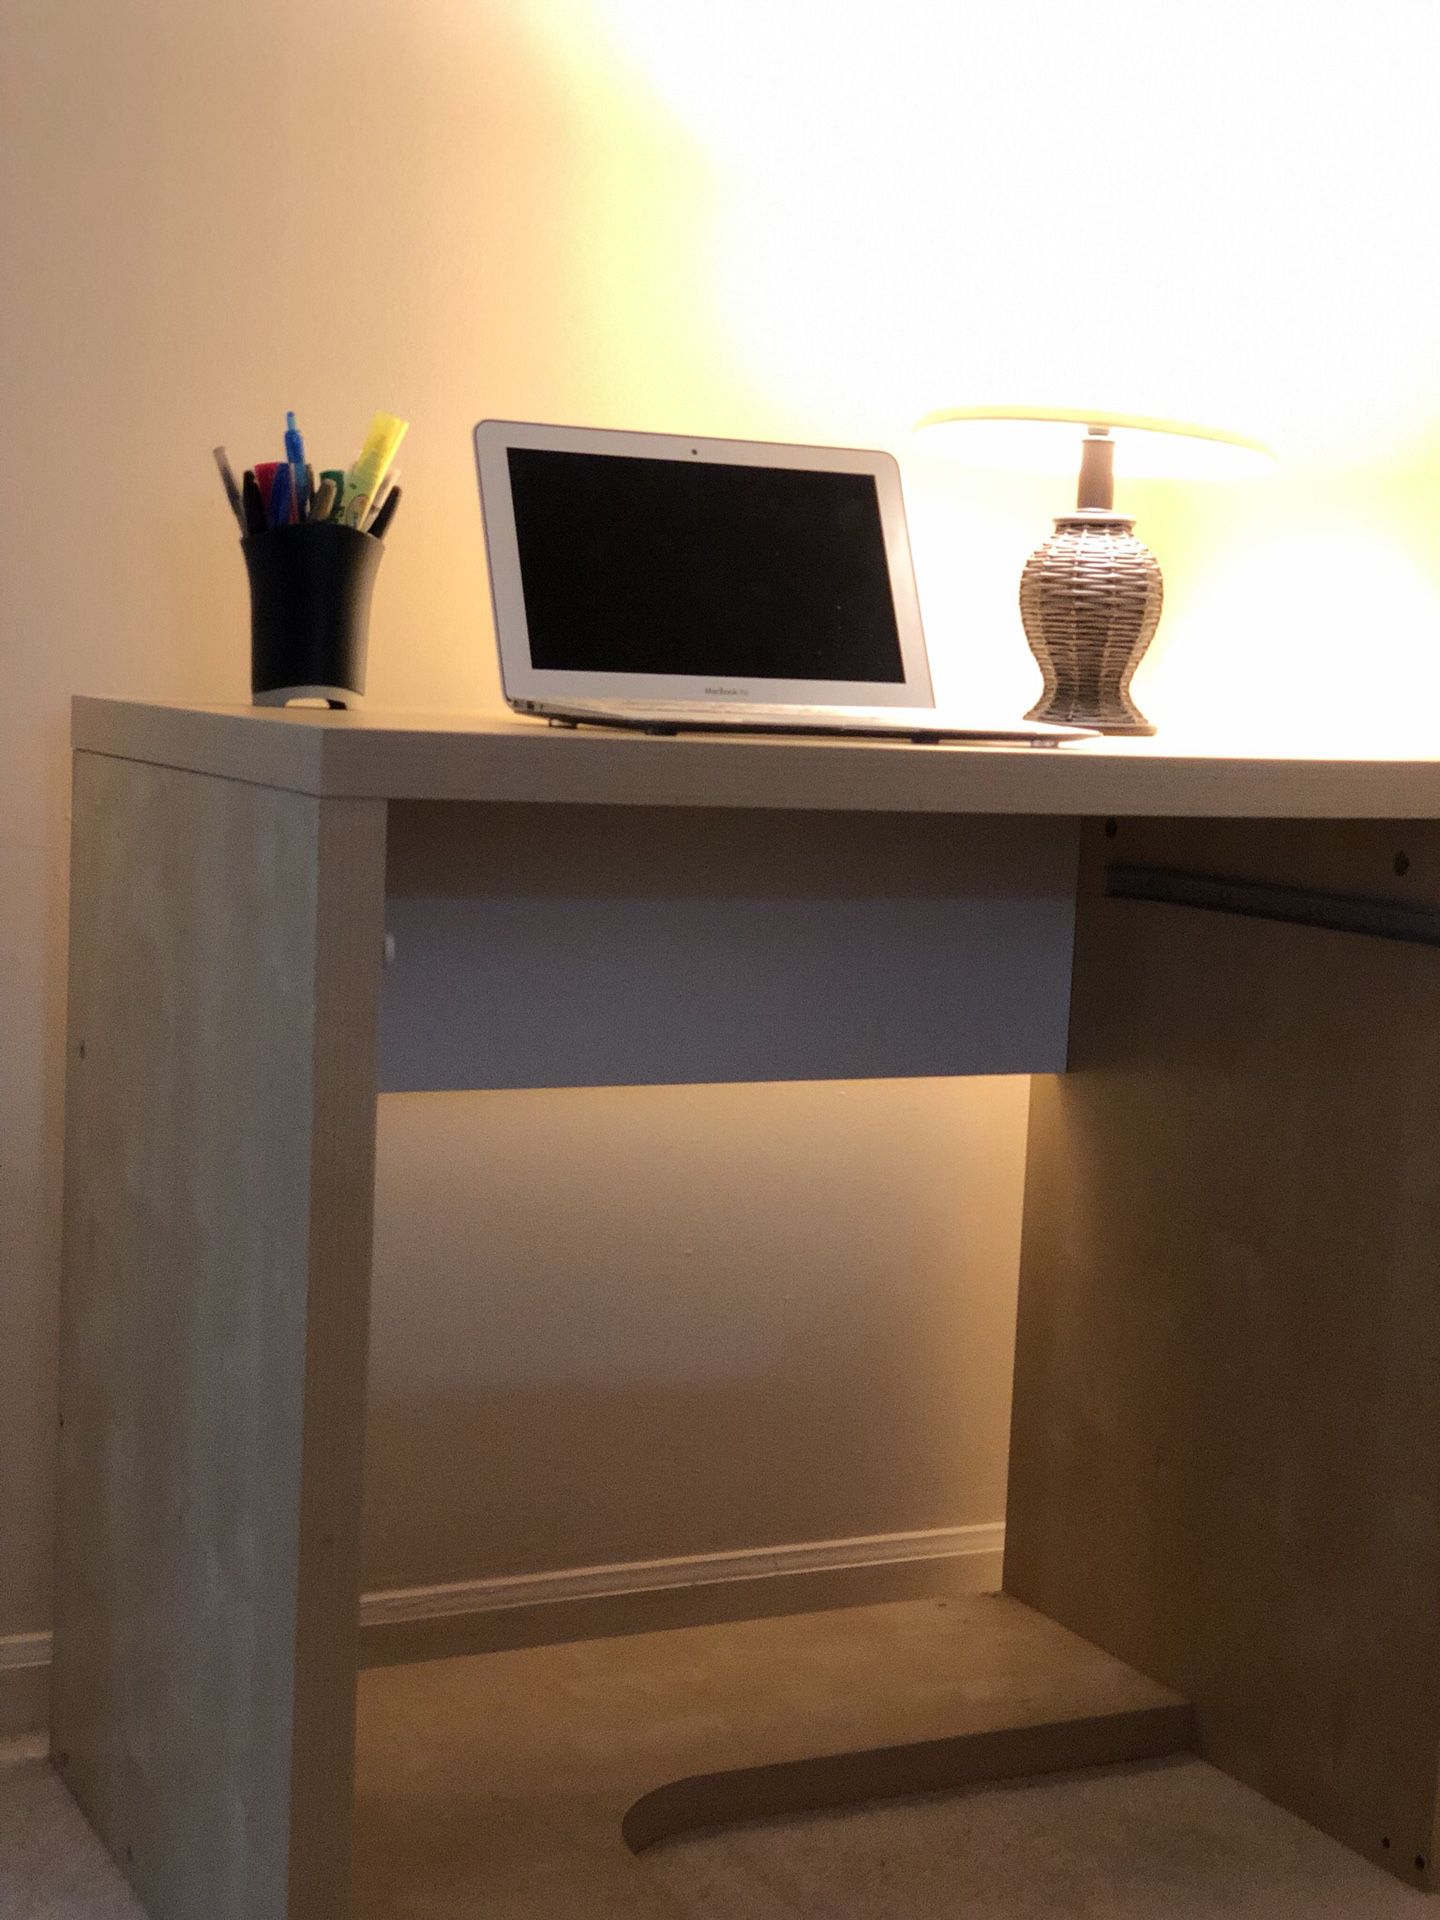 Small Desk w/lamp, pens, pen holder